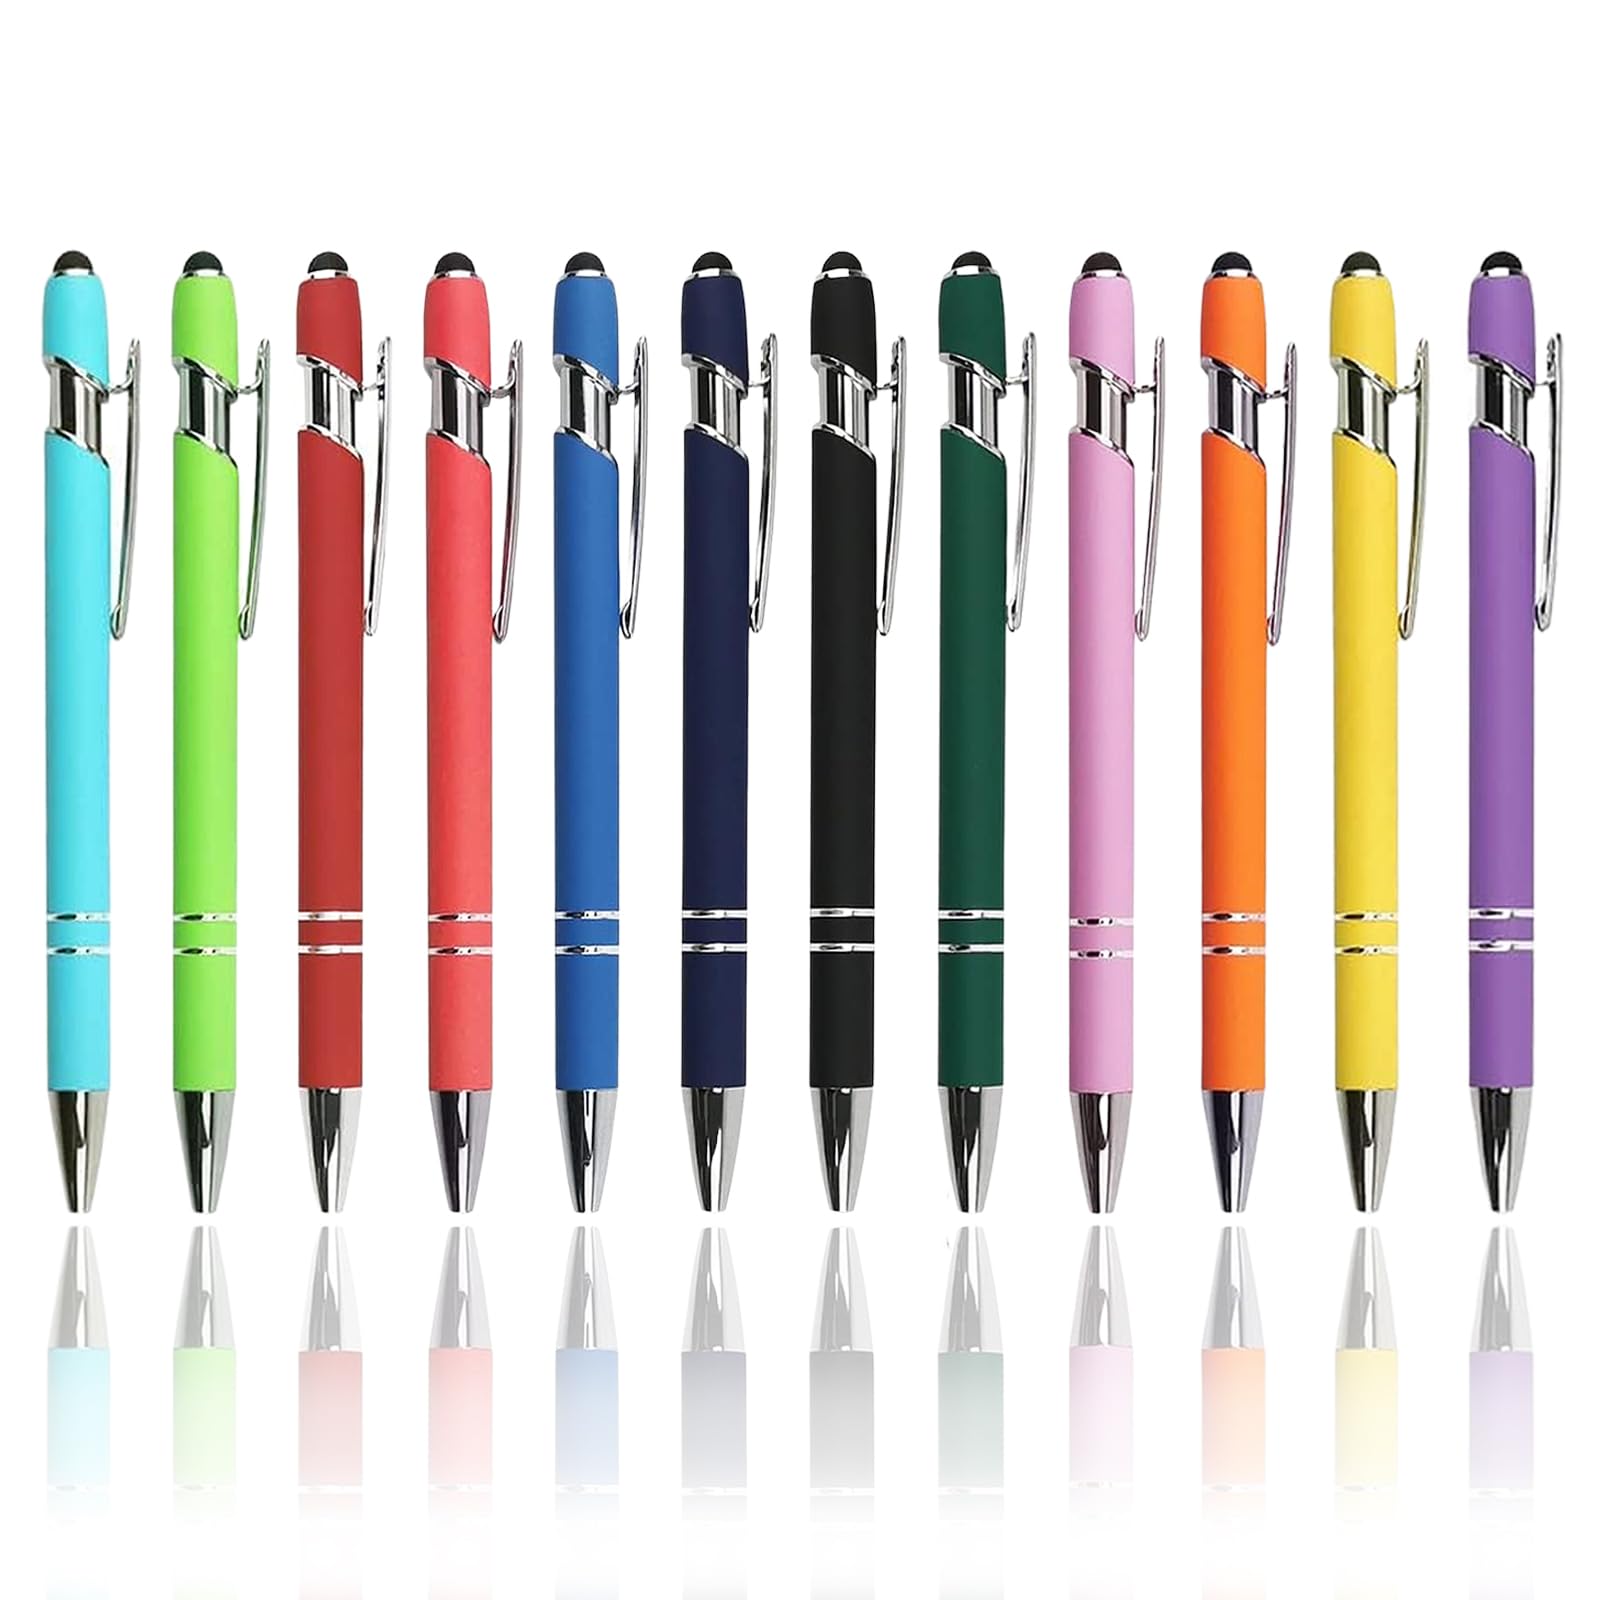 LIANHATA タッチペン ボールペン付き 2 in 1 12本セット 多機能ボールペン 黒インク スタイラスペン タブレット タブレット スマートフォン用 軽量 使いやすい (2in1ボールペン)